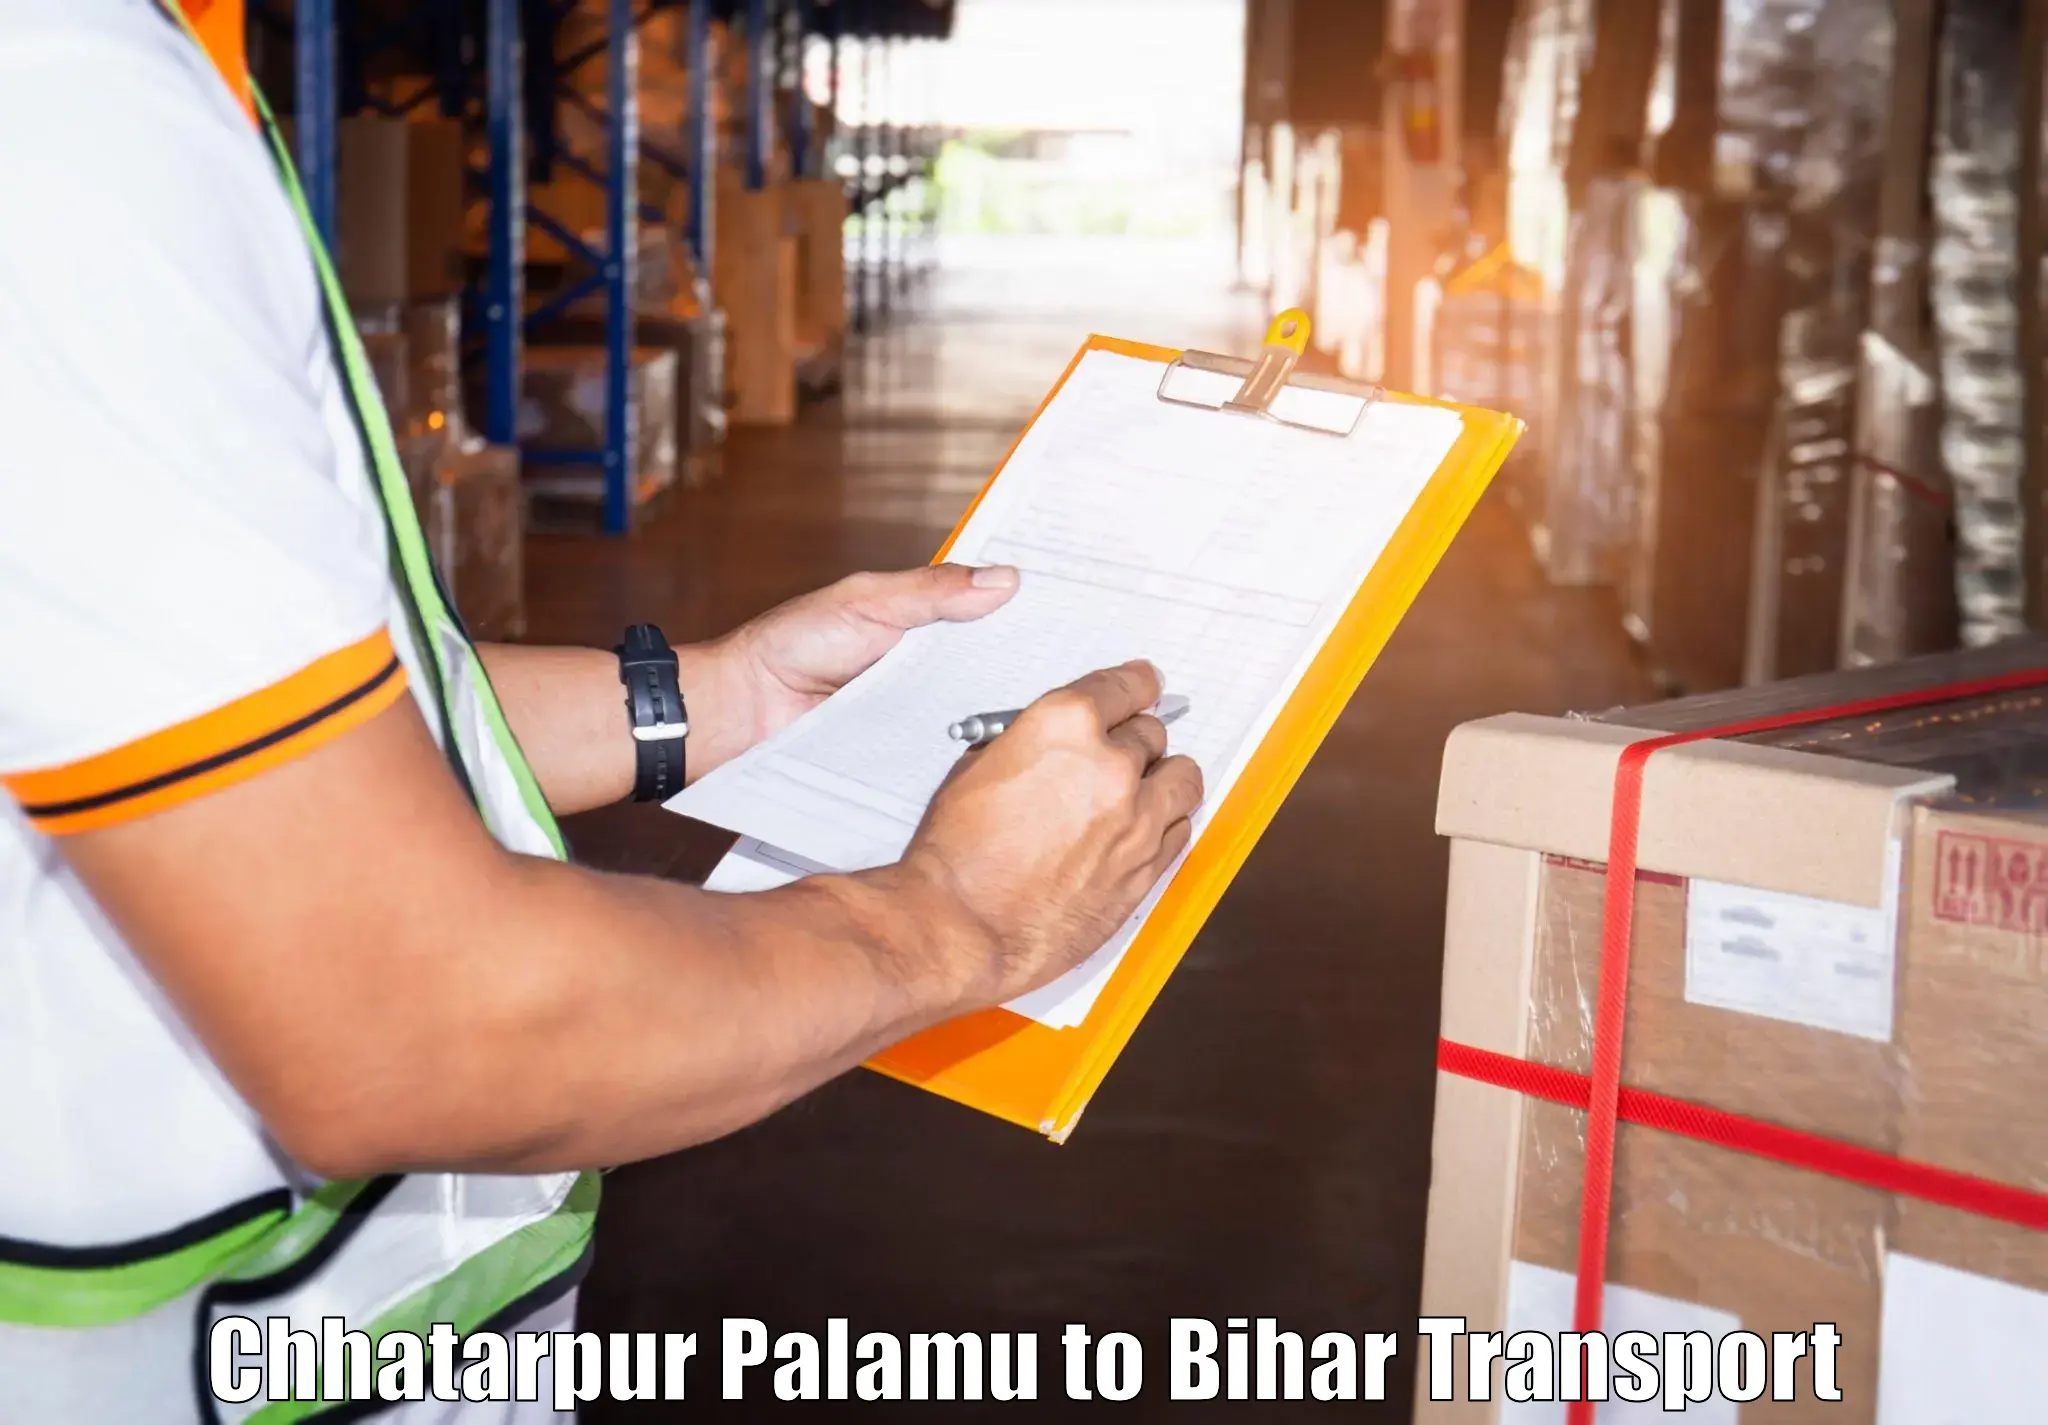 Nationwide transport services Chhatarpur Palamu to Jhajha